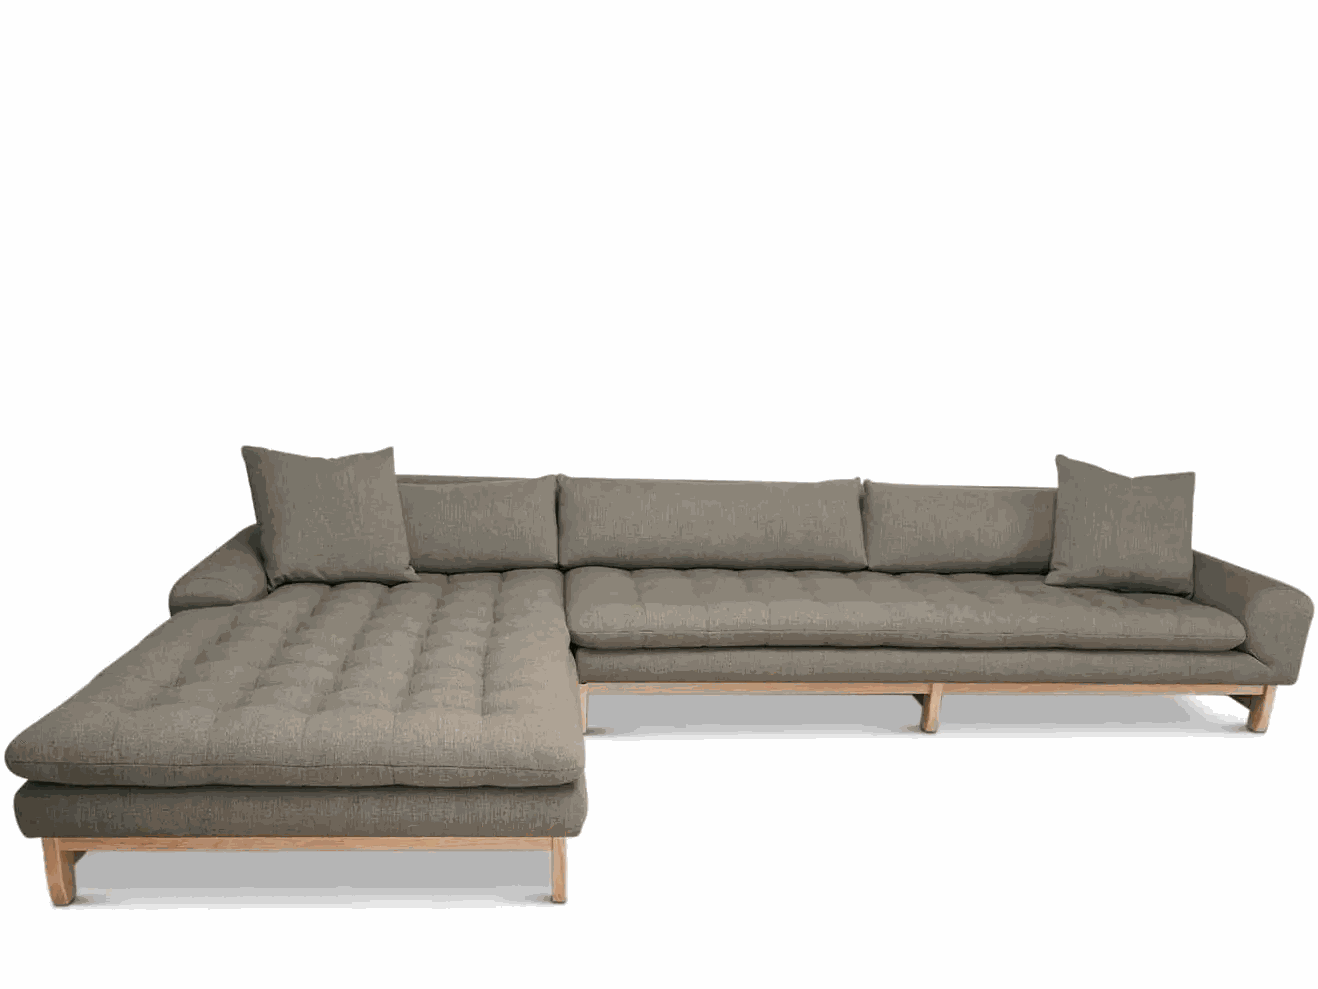 Mẫu sofa gỗ Sồi (Oak) với thiết kế hình chữ I thẳng quen thuộc mang đến sự hiện đại, tối giản cho không gian